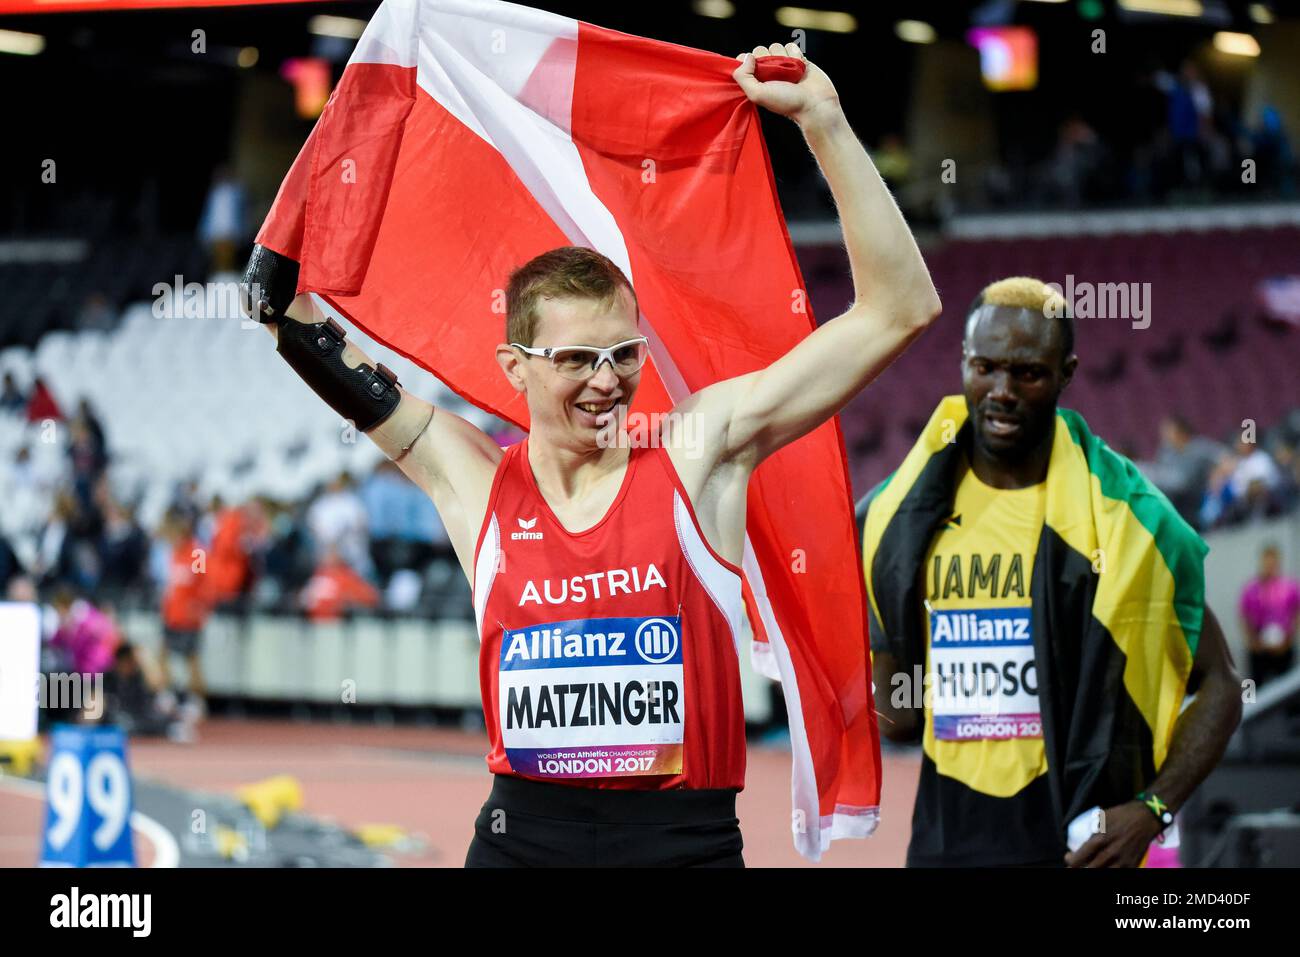 Gunther Matzinger célèbre après avoir remporté le T47 400m aux Championnats du monde d'athlétisme Para 2017, London Stadium, Royaume-Uni. Athlète parasportif autrichien Banque D'Images